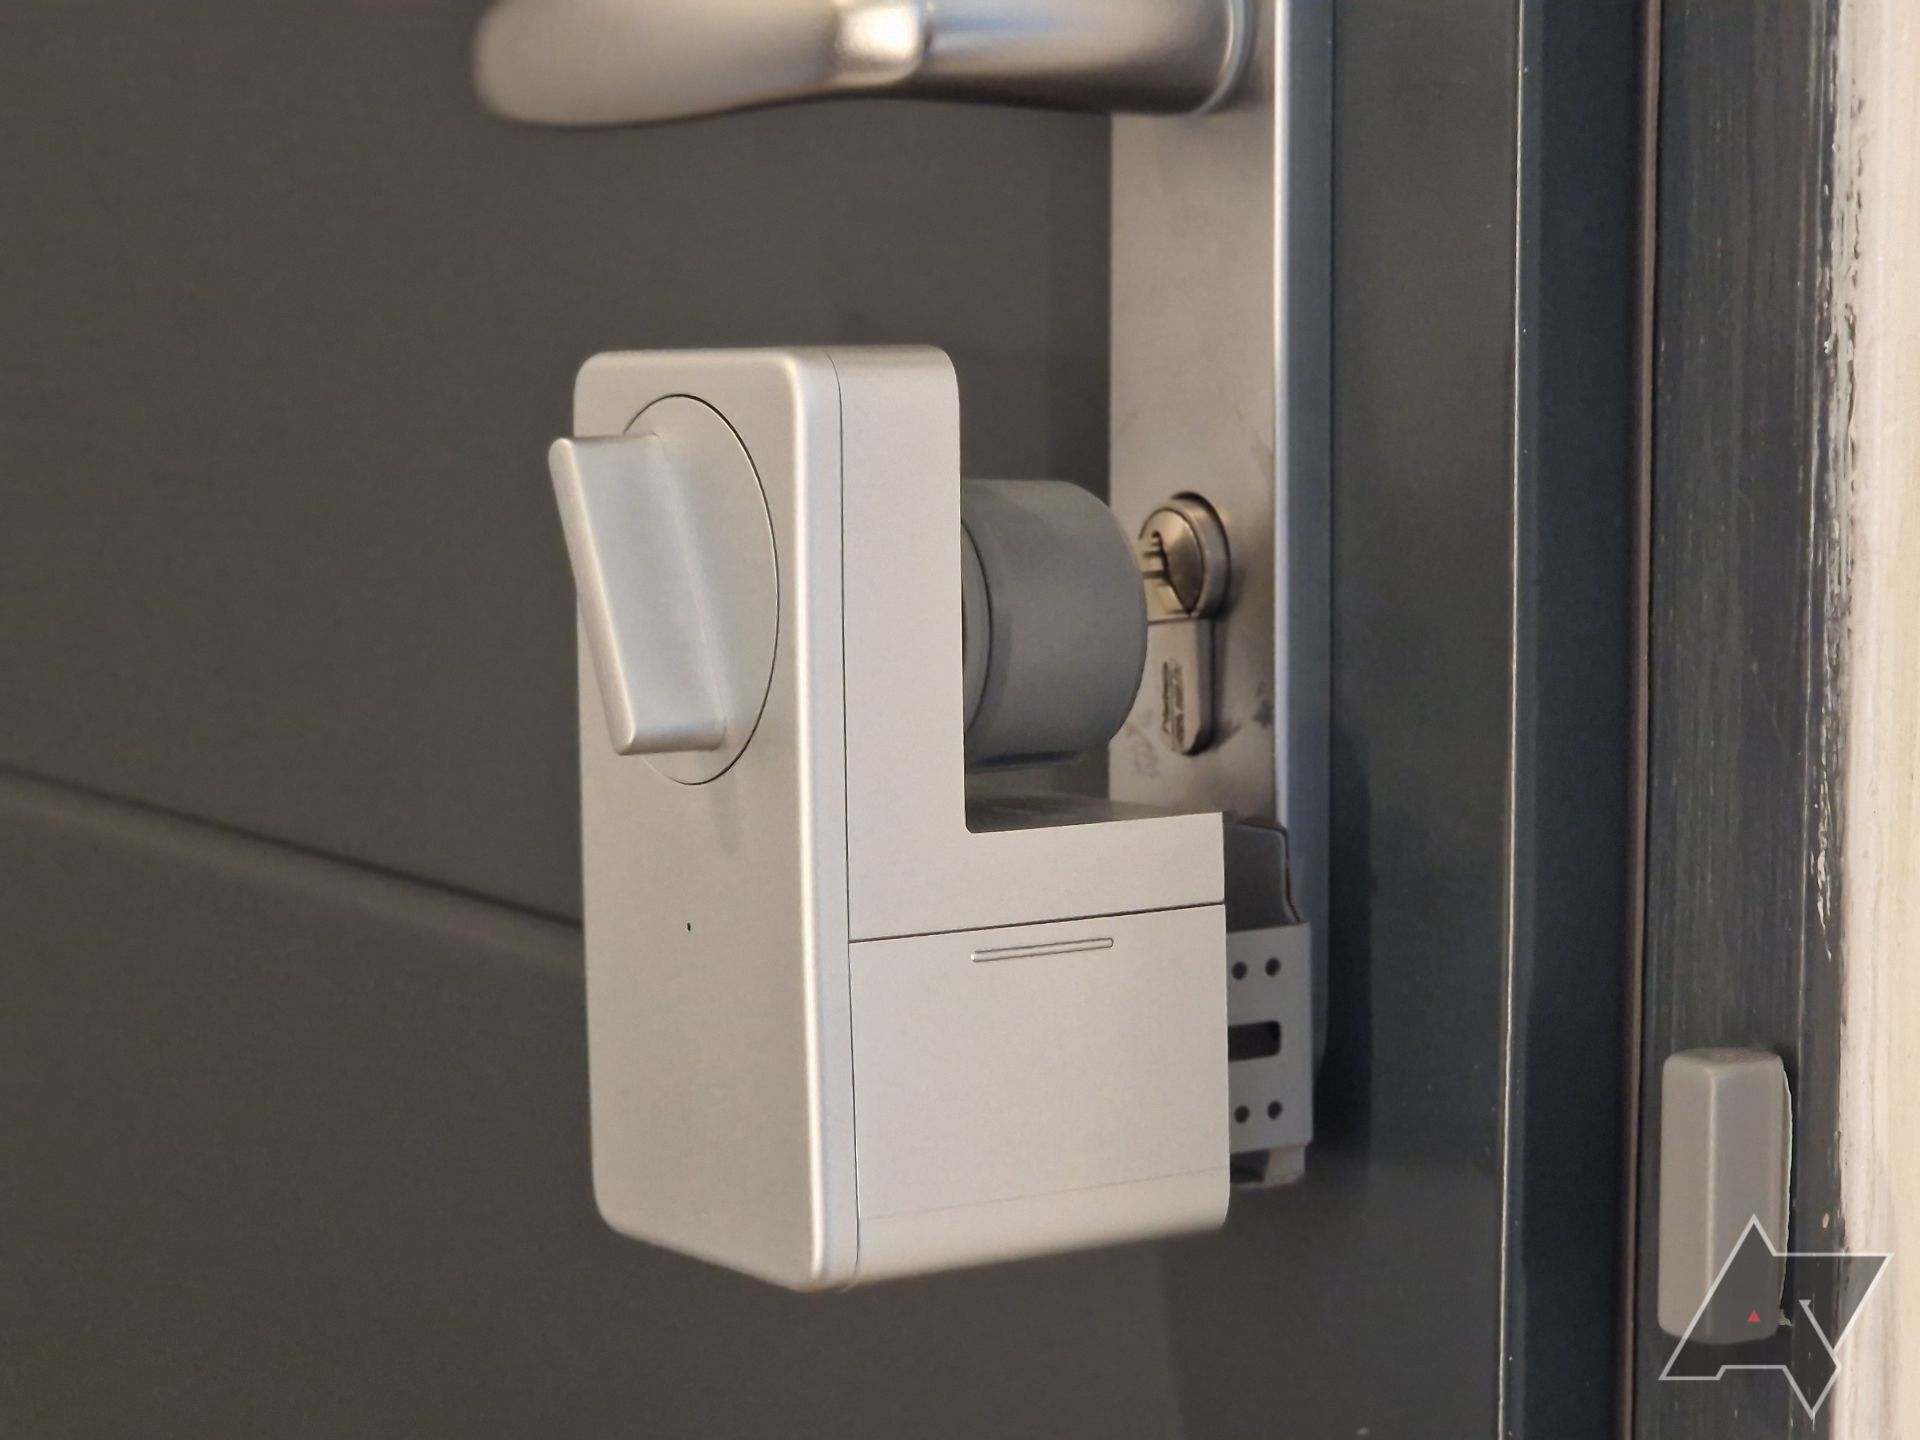 Imagem do SwitchBot Smart Lock anexado à porta, com o sensor da porta na lateral